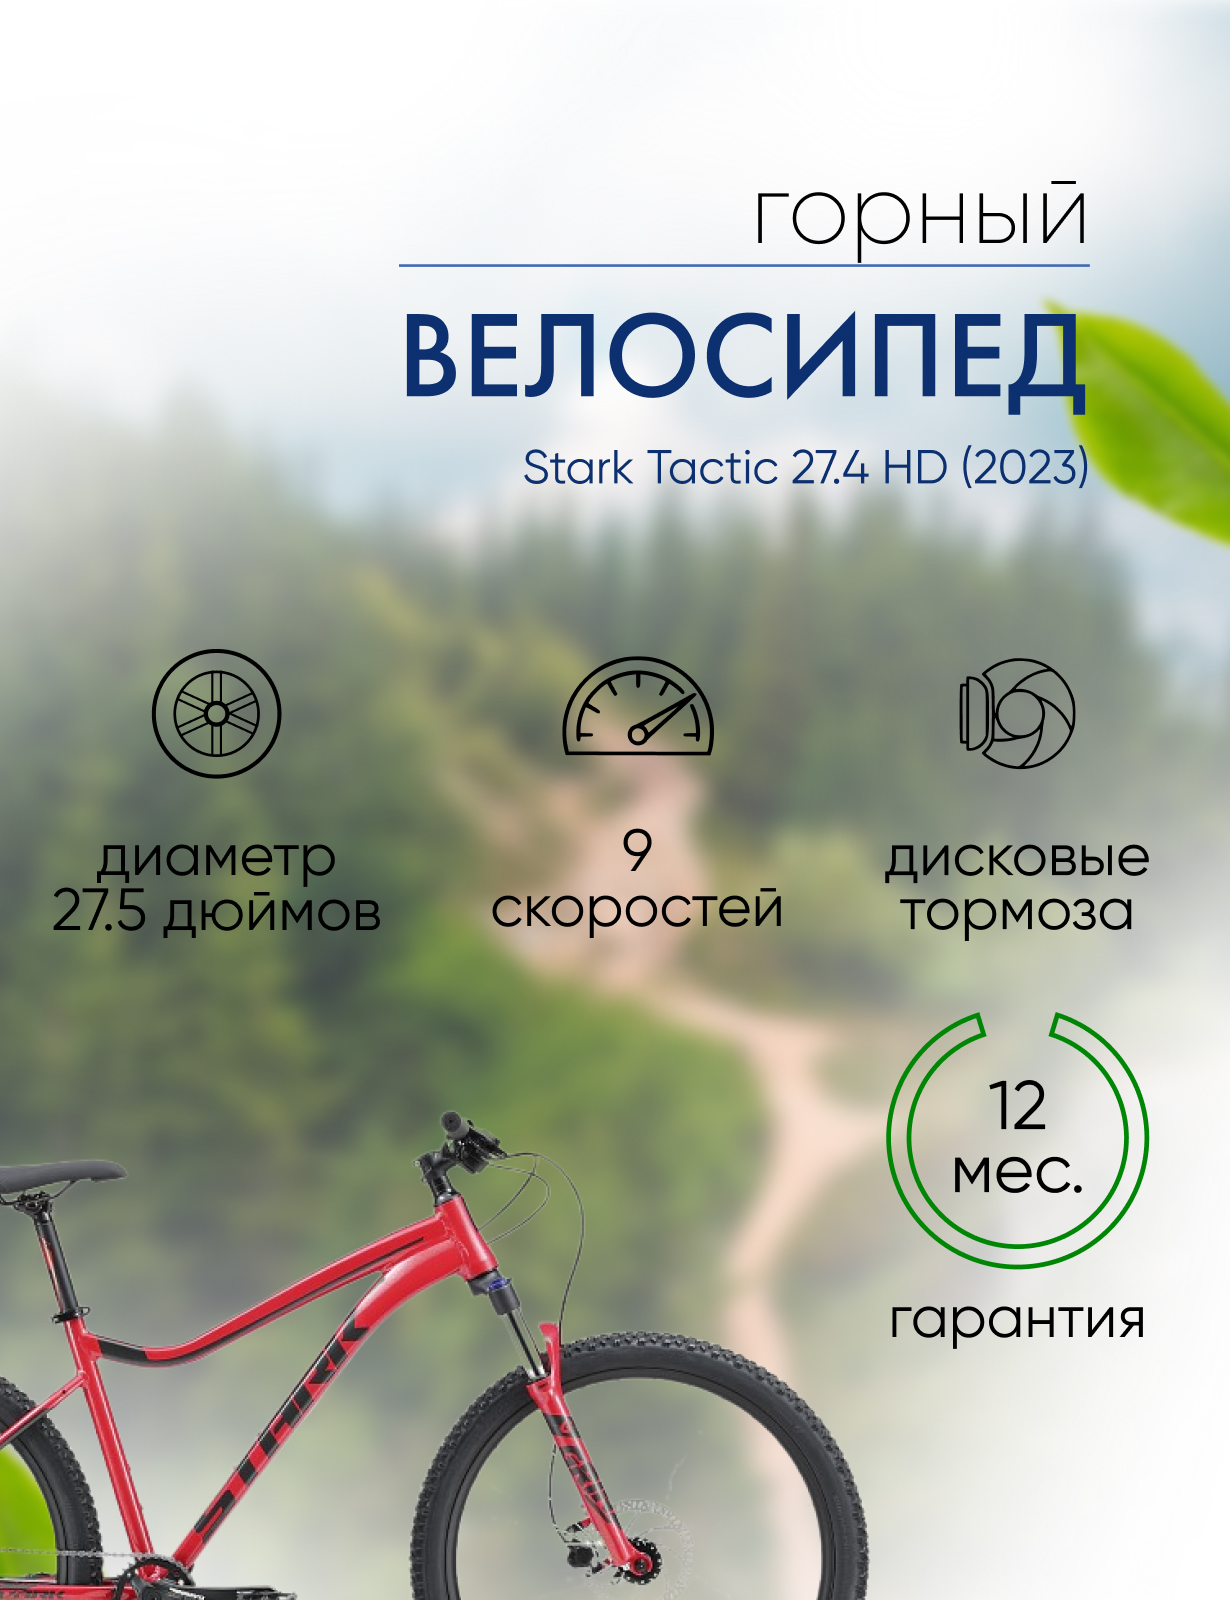 Горный велосипед Stark Tactic 27.4 HD, год 2023, цвет Красный-Серебристый, ростовка 18